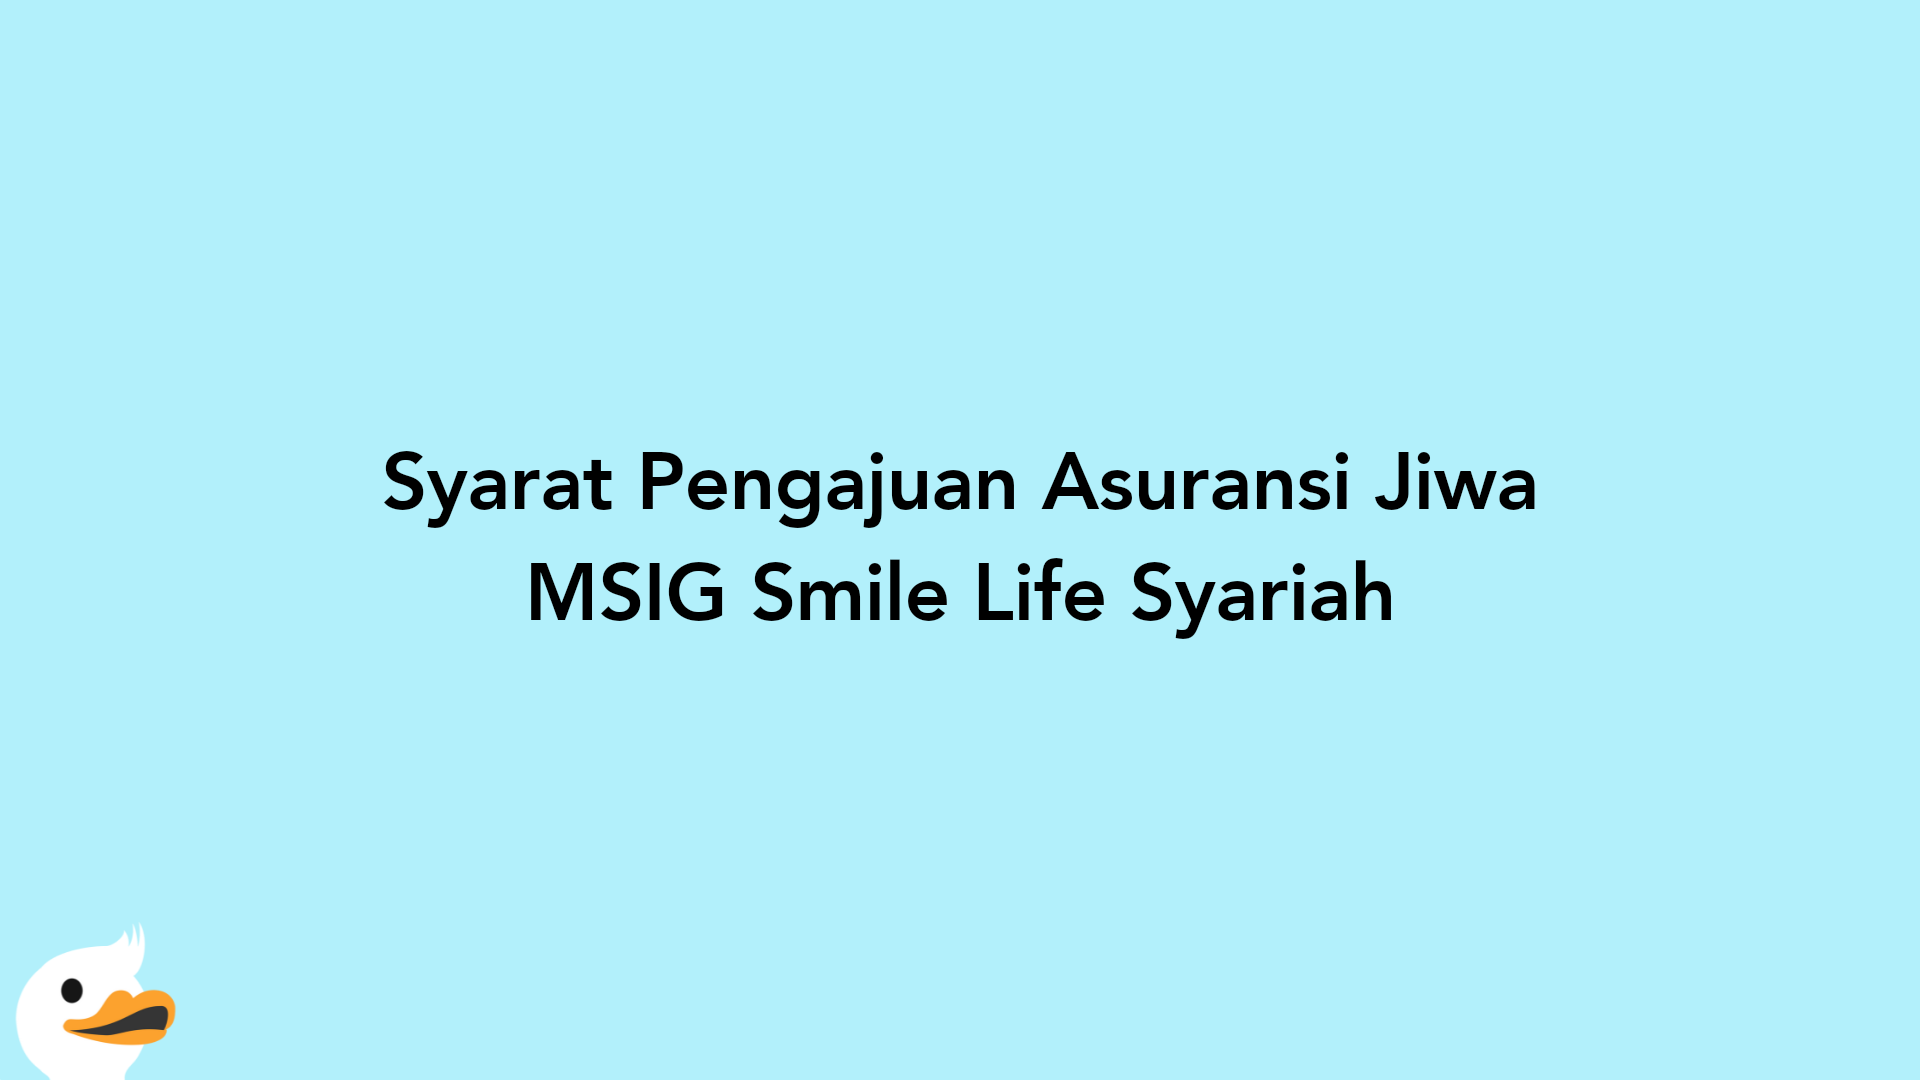 Syarat Pengajuan Asuransi Jiwa MSIG Smile Life Syariah